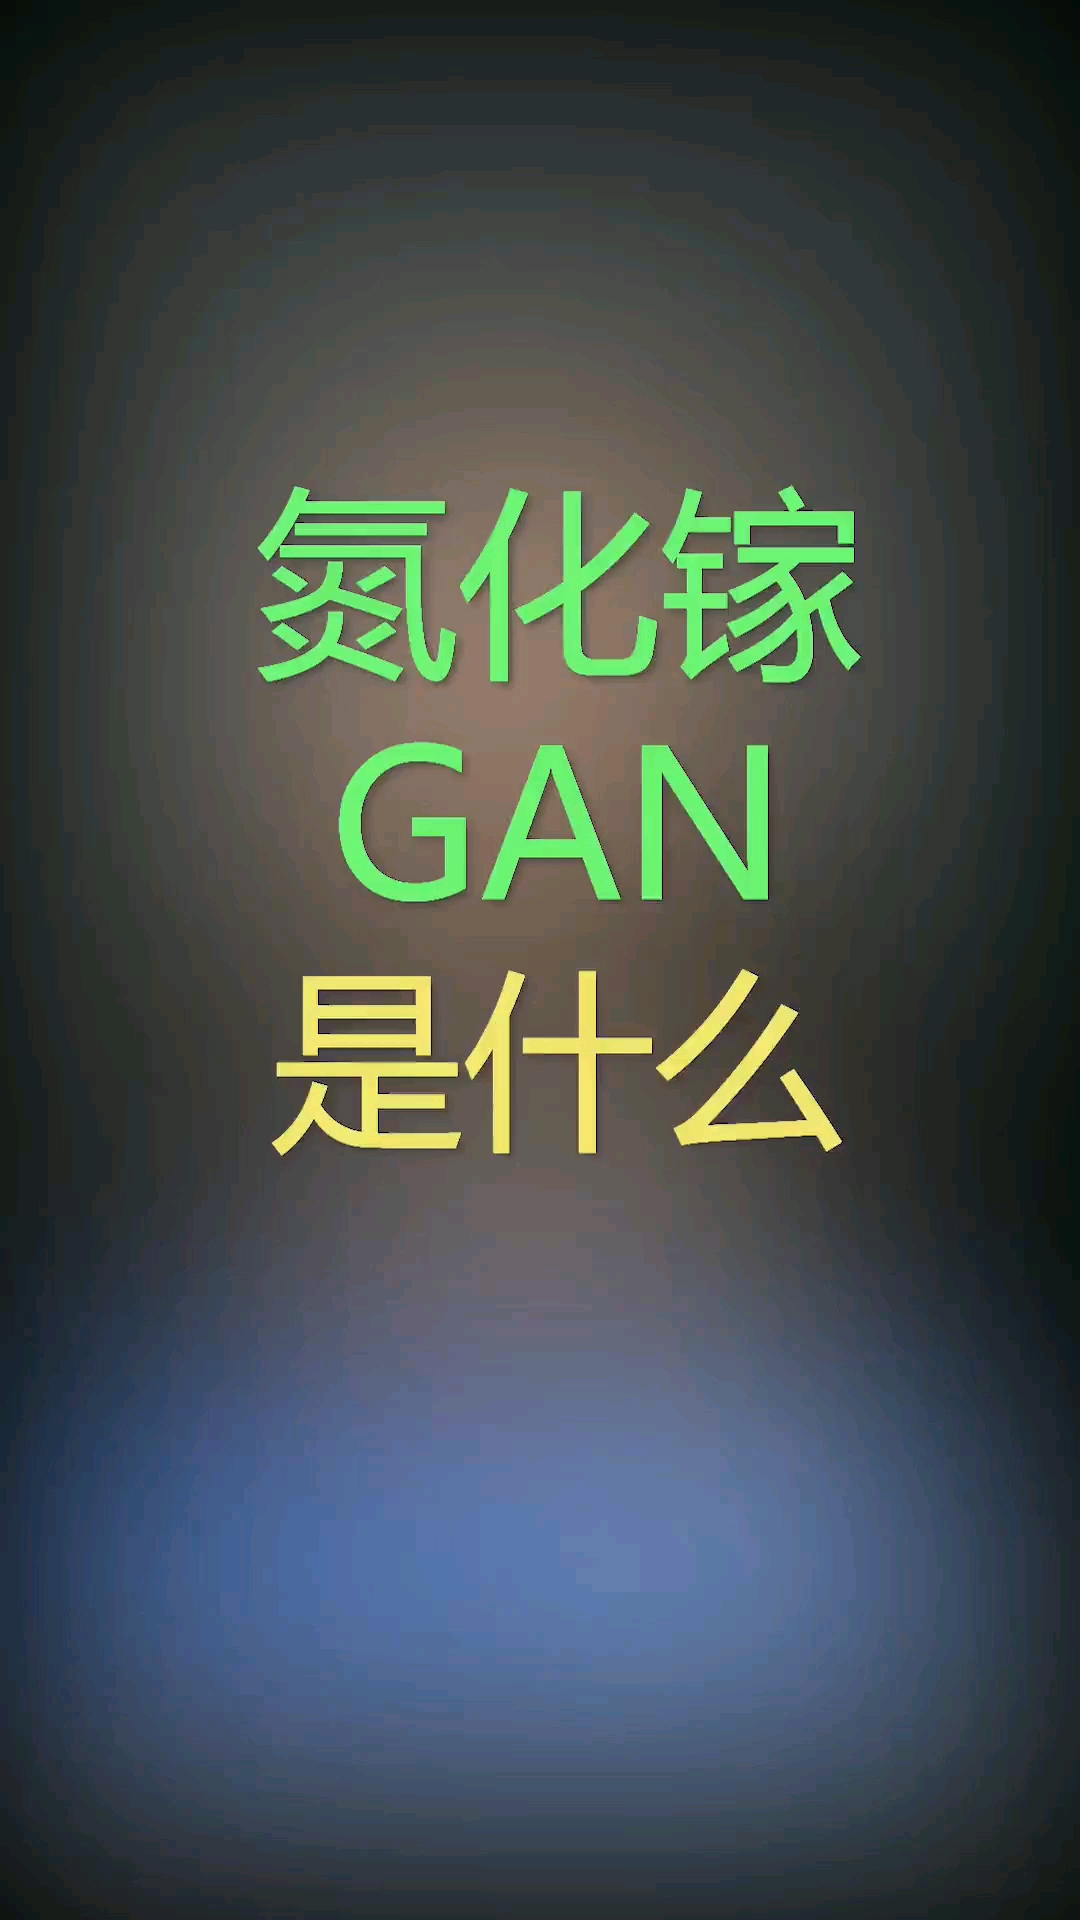 氮化镓（Gan）是什么，带你了解一下充电器的发展历程 #华强北  #大帥  #绿色联盟   #手机